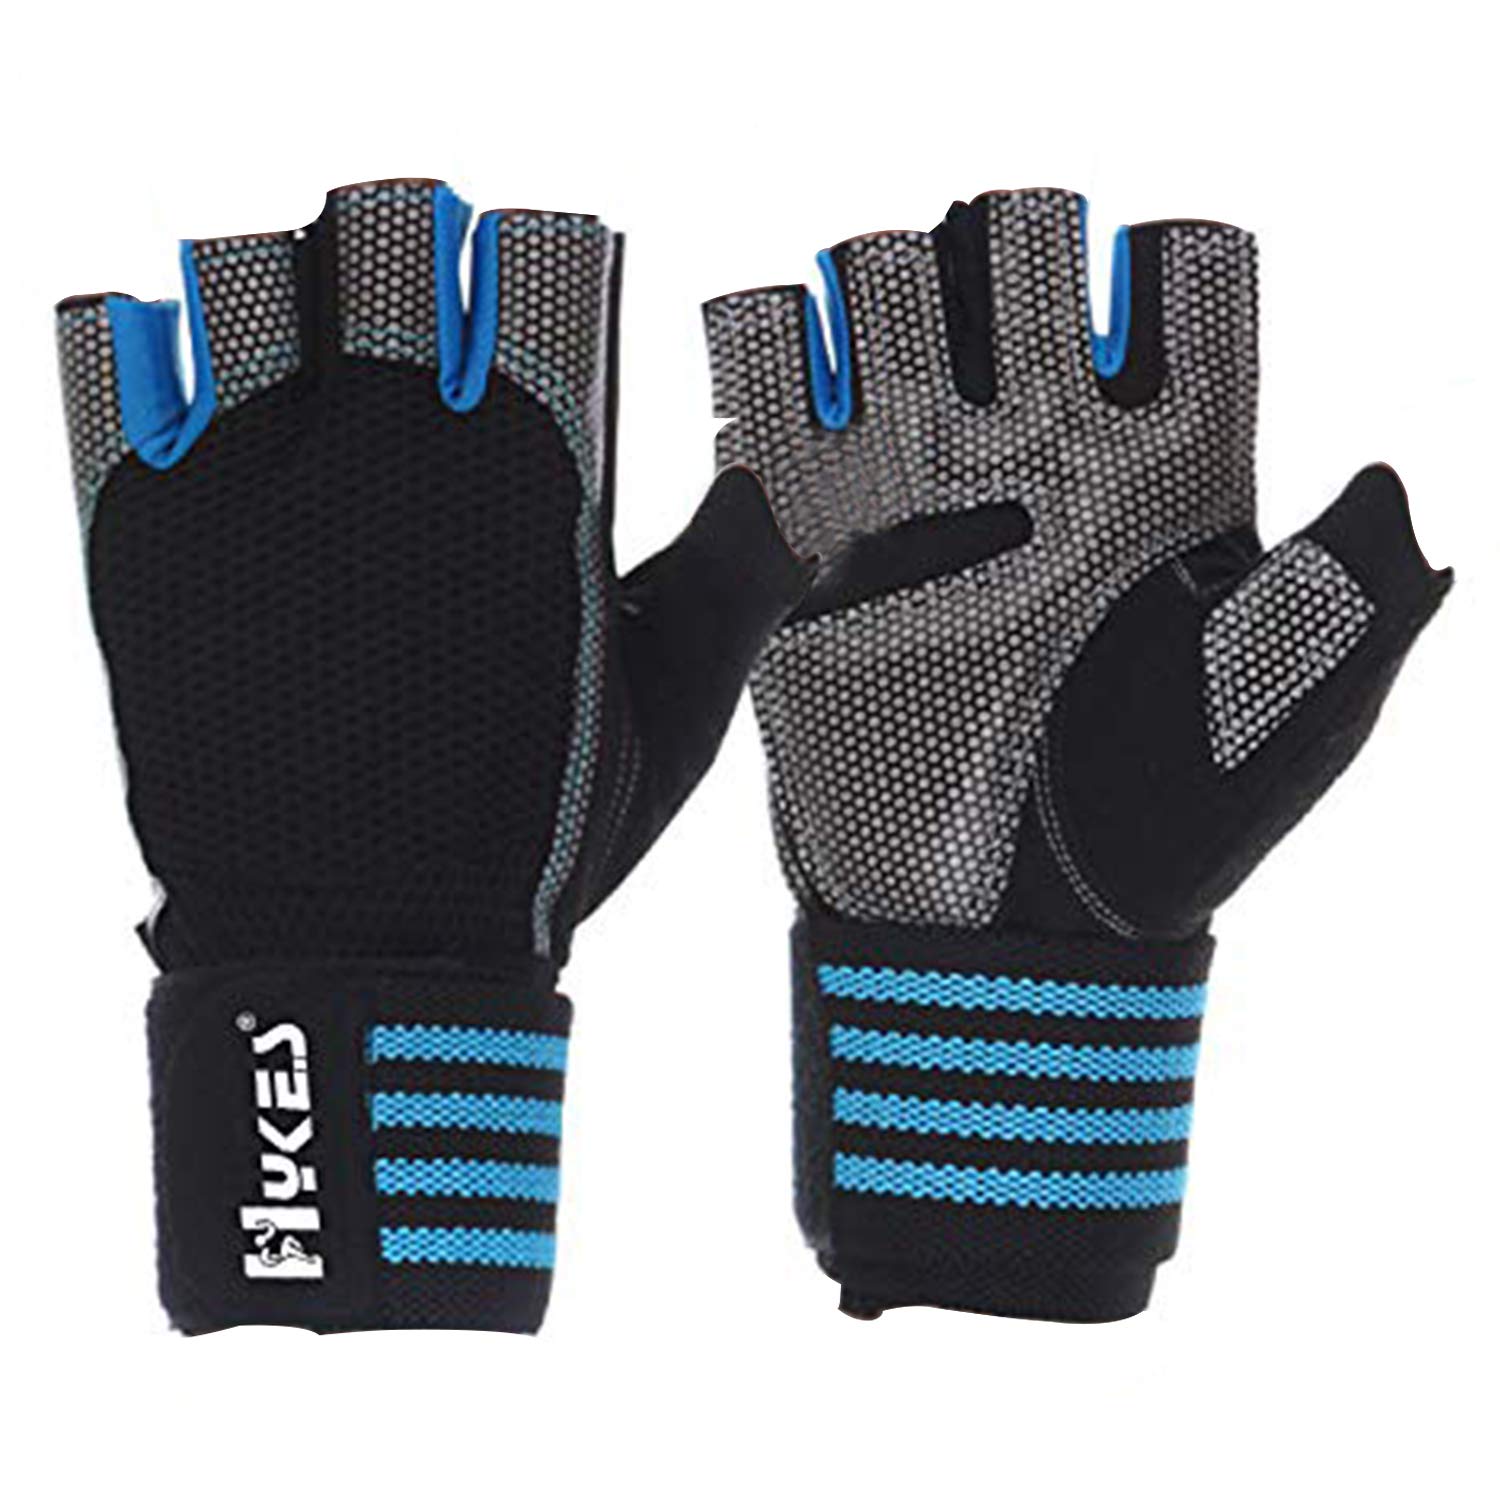 Unisex Ultralight Microfiber & Neoprene Gym Gloves Wrist Wraps for